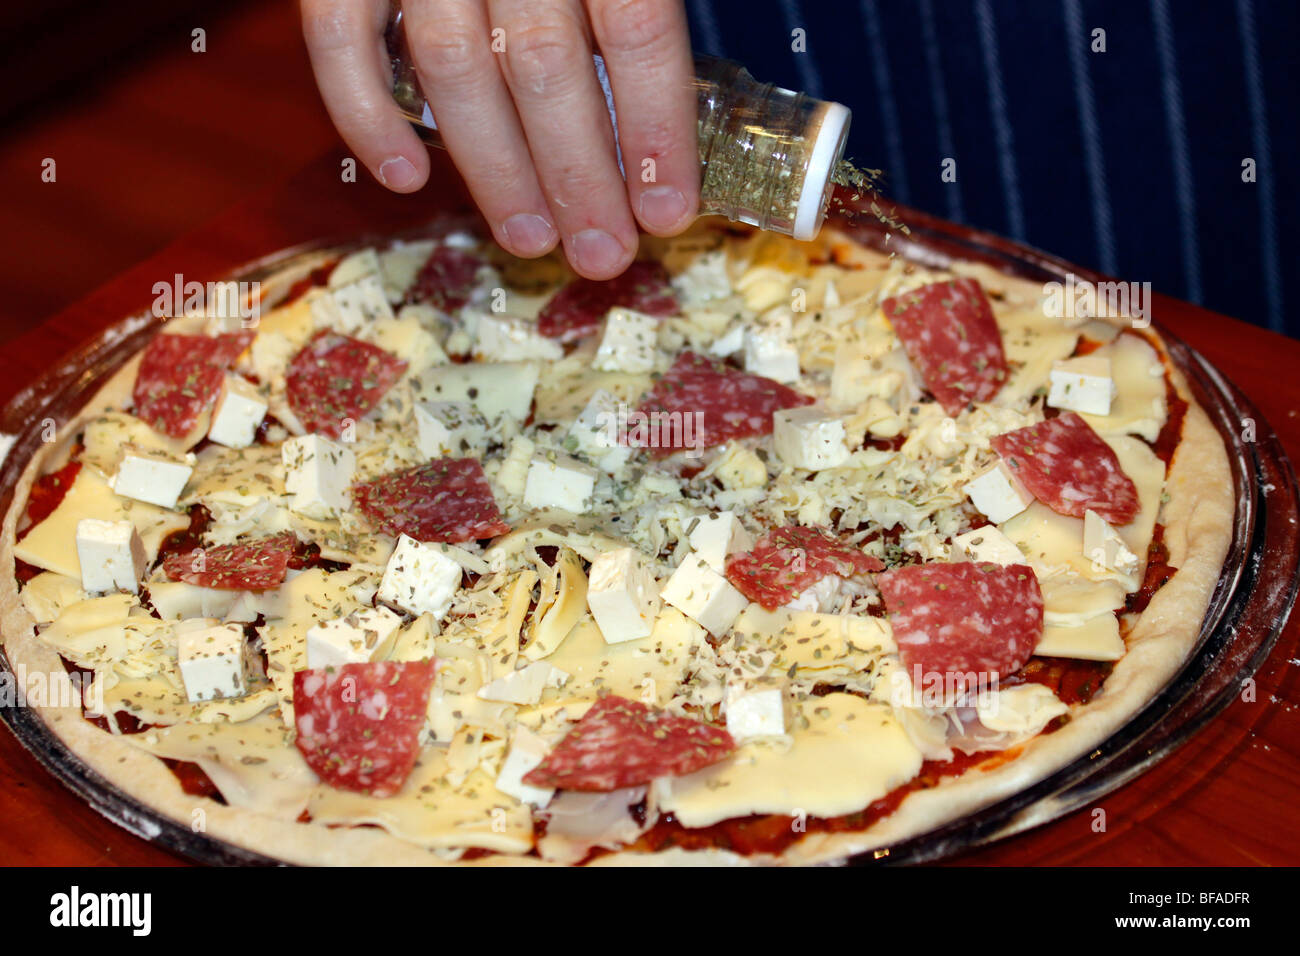 Sprinkling dried oregano oreganum on pizza. Stock Photo